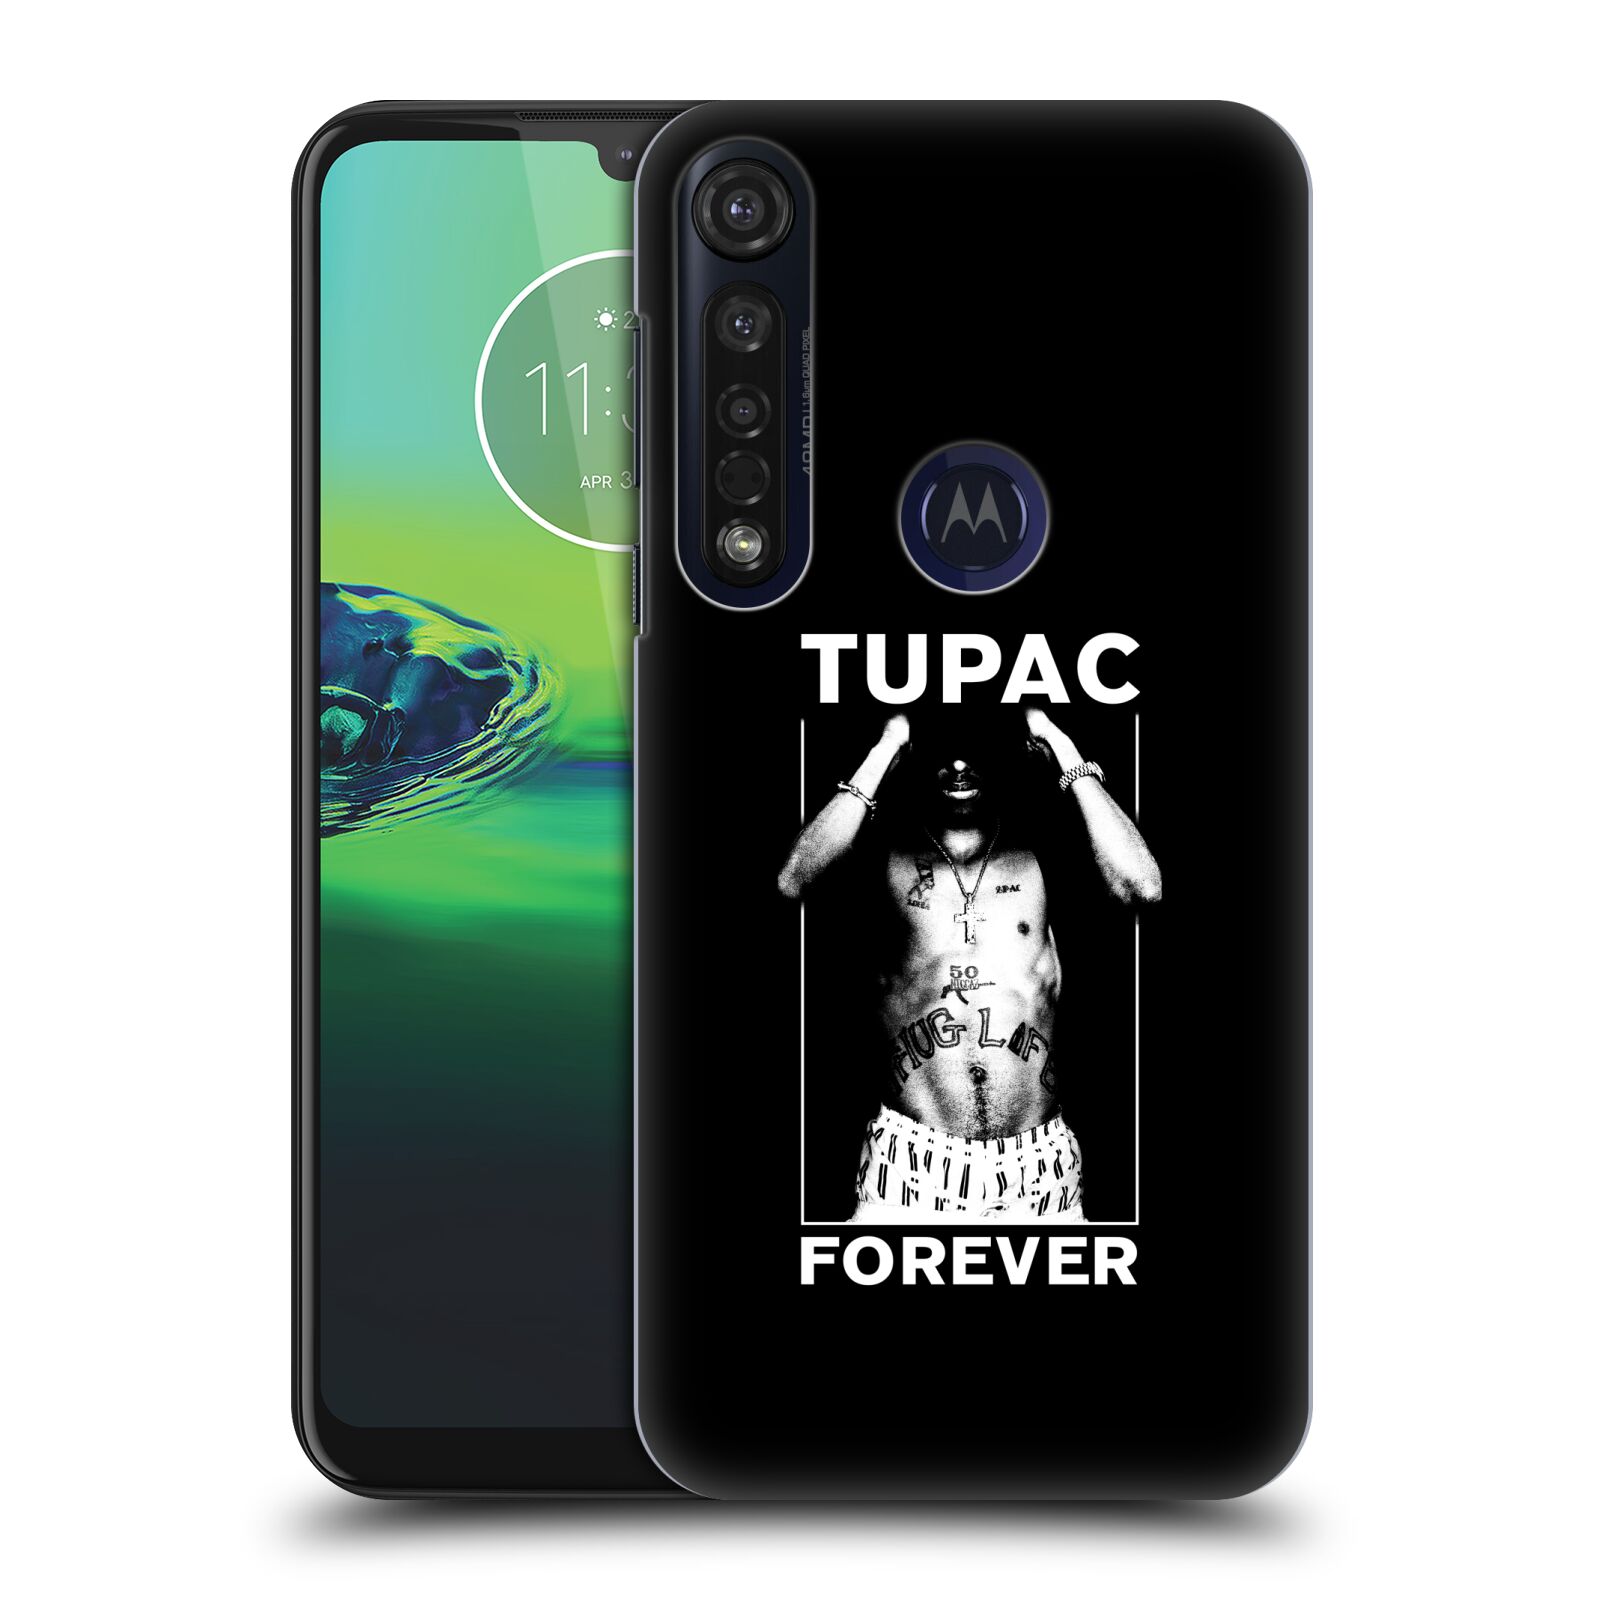 Pouzdro na mobil Motorola Moto G8 PLUS - HEAD CASE - Zpěvák rapper Tupac Shakur 2Pac bílý popisek FOREVER